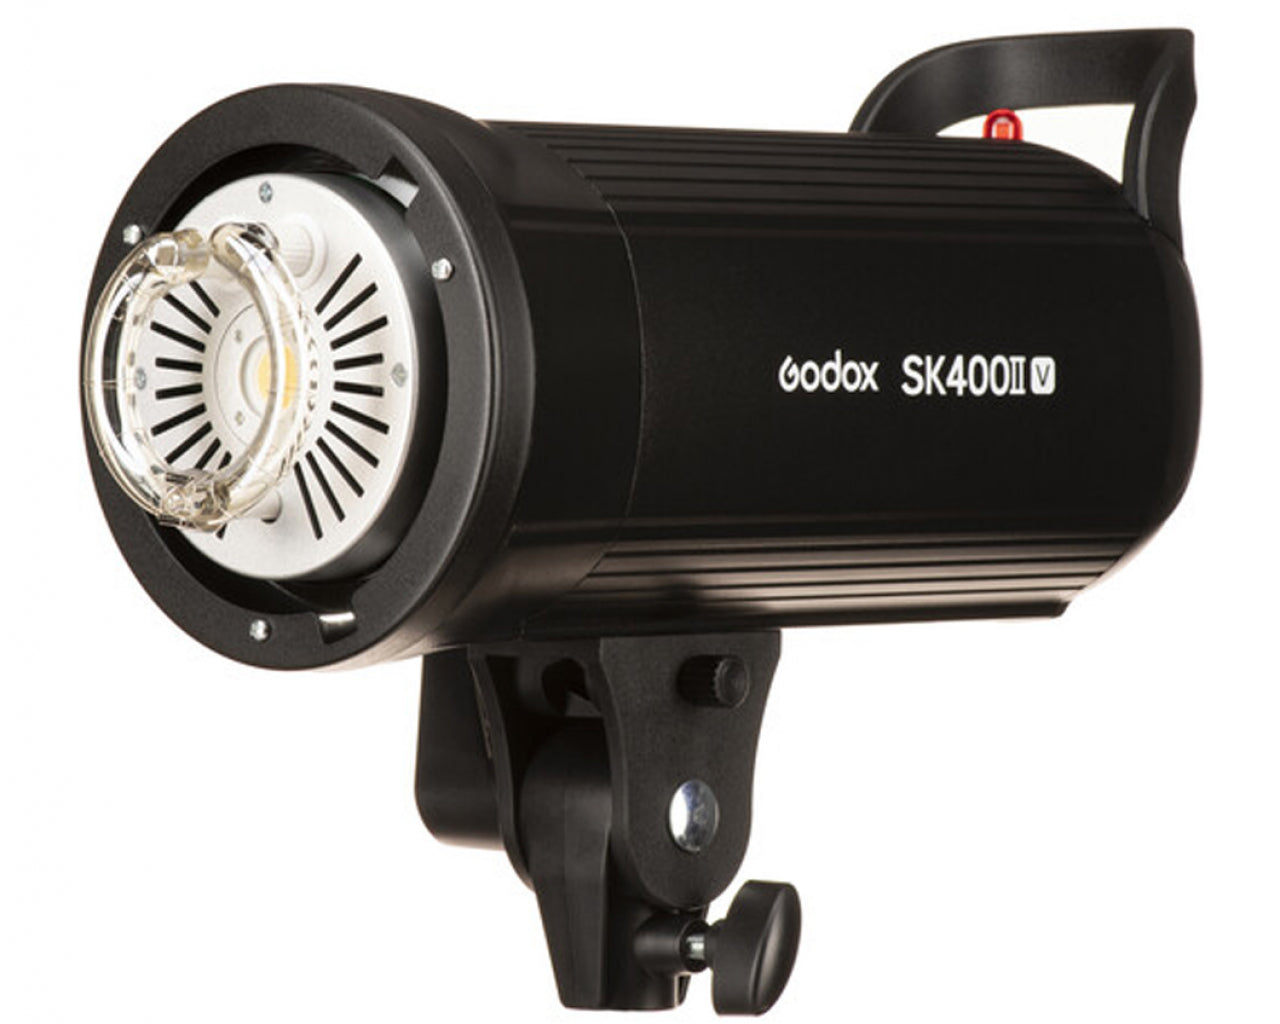 Godox Flash Monotorcia SK400II-V  Con lampada pilota a led  - Cine Sud è da 48 anni sul mercato! 0279571